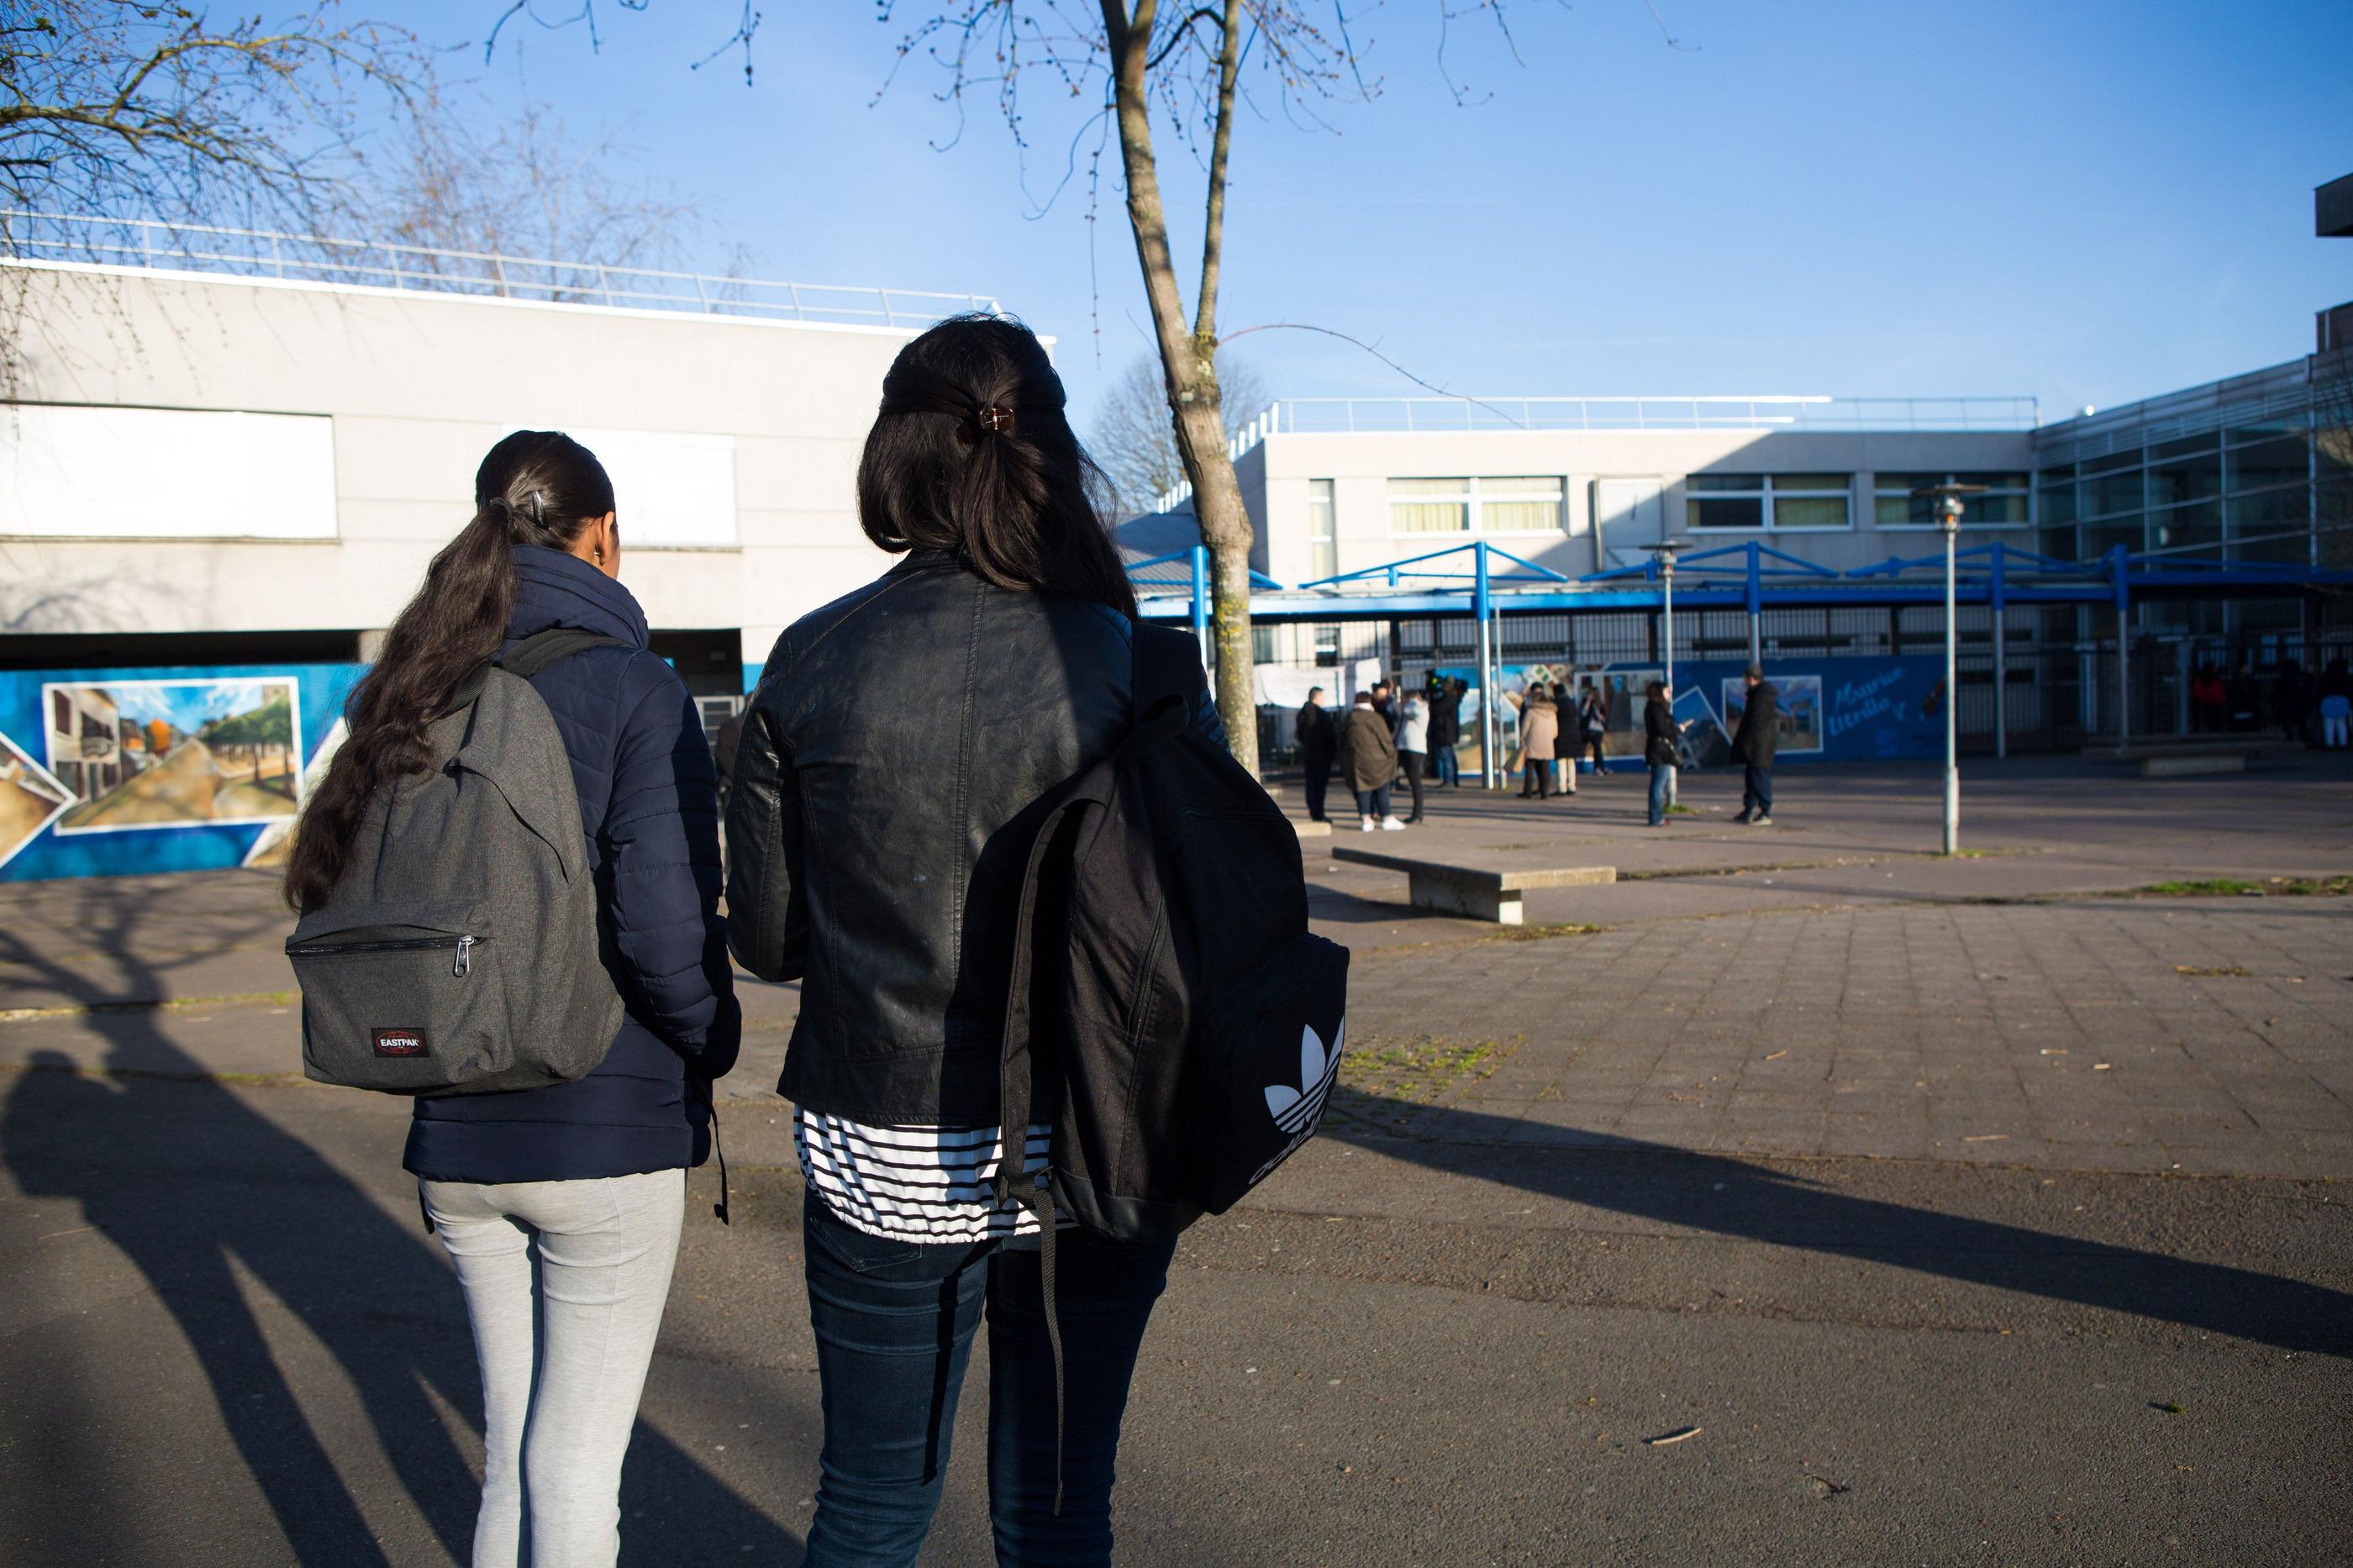 Une assemblée générale, qui s'est tenue ce lundi 4 septembre au lycée Maurice-Utrillo de Saint-Denis, a voté la grève pour dénoncer la diminution drastique de moyens et rejeter l'interdiction de l'abaya, décidée par le gouvernement. LP/Jean Nicholas Guillo